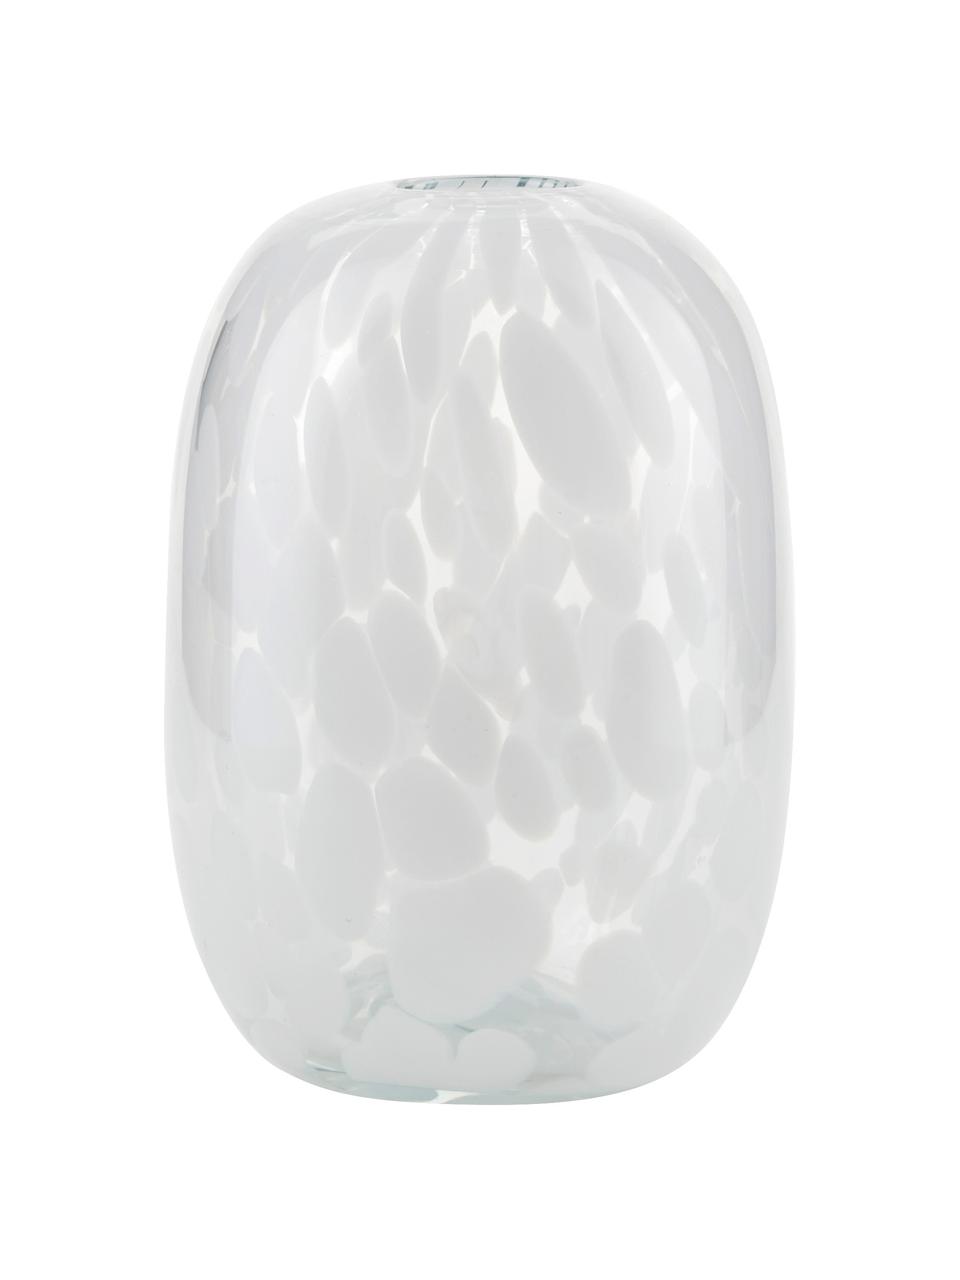 Design-Vase Dots mit Tupfen-Optik, Glas, Weiss, Ø 11 x H 17 cm